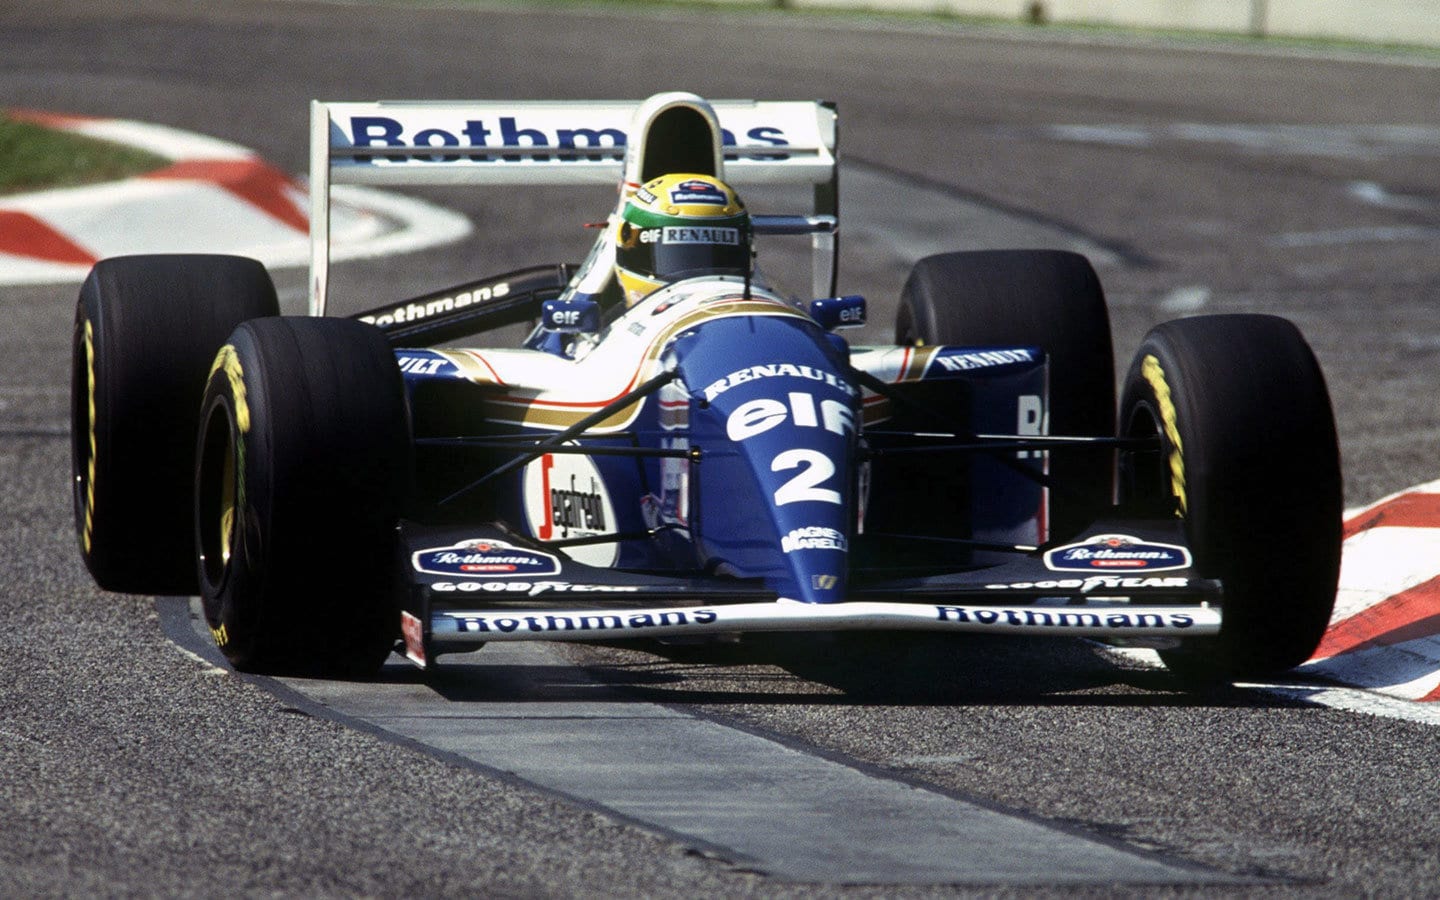 Ayron Senna's last Pole Position